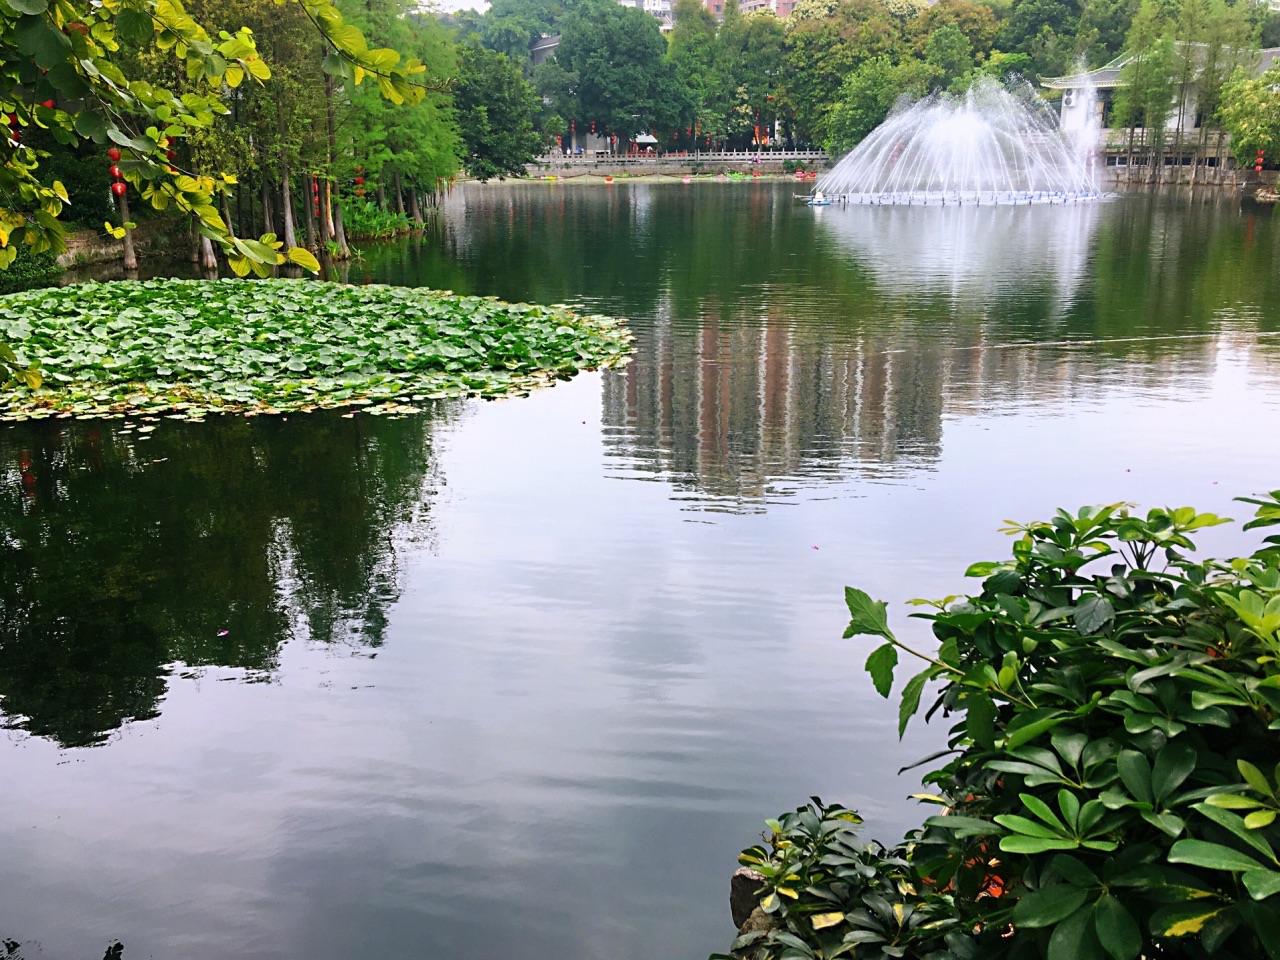 彩虹湖公园位于济南市高新区孙村片区正中……